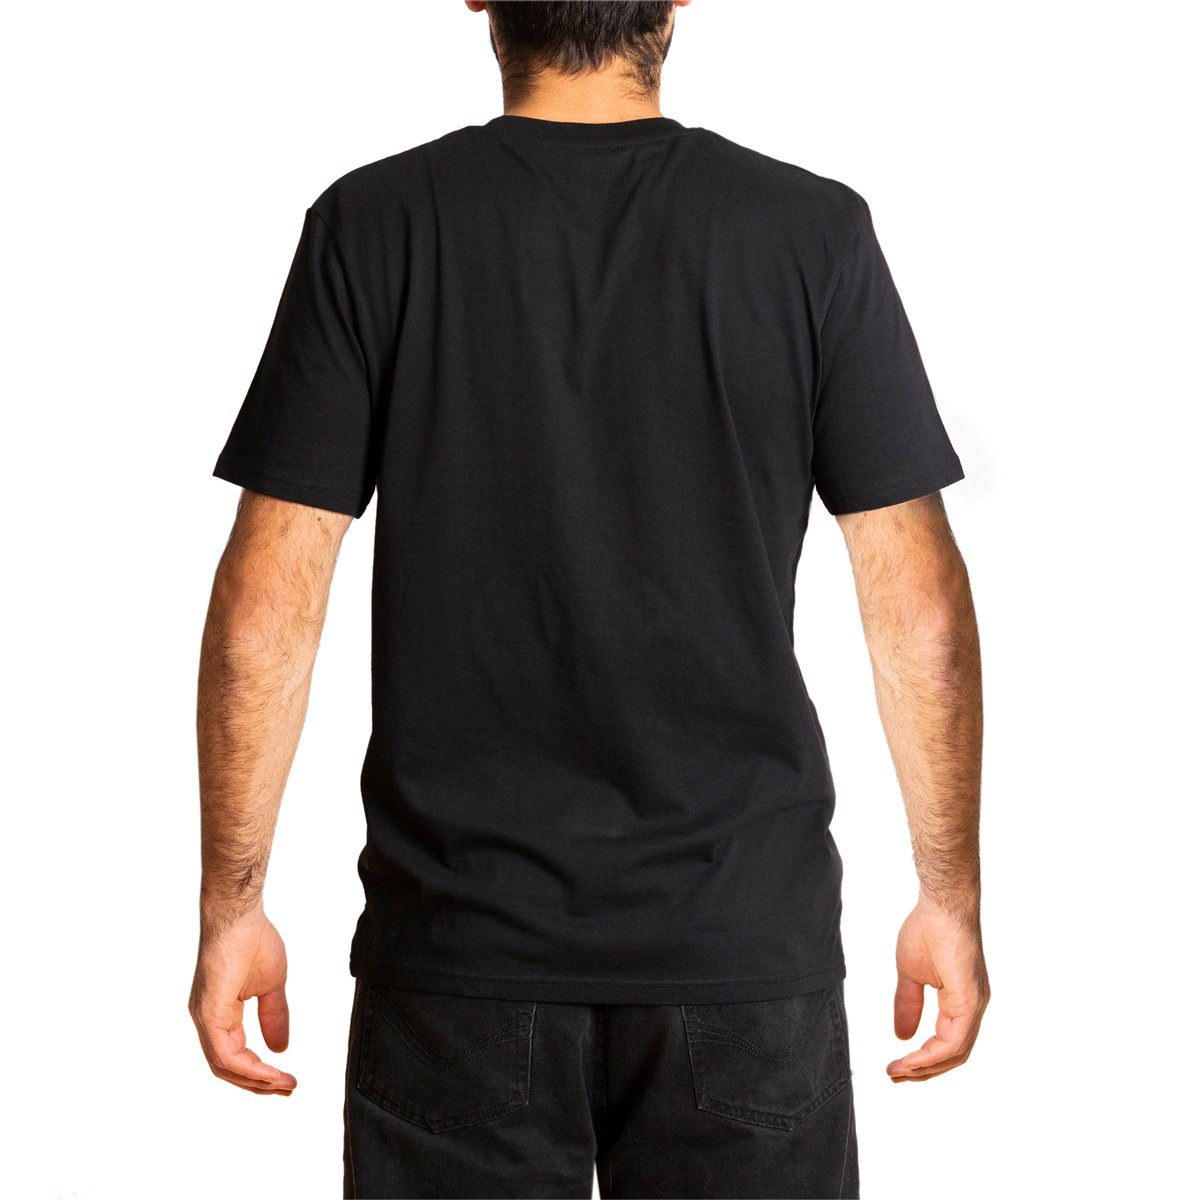 Baumwolle aus T-Shirt gehandelter Schwarz Herren T-Shirt fair "Basic" PANASIAM Bio